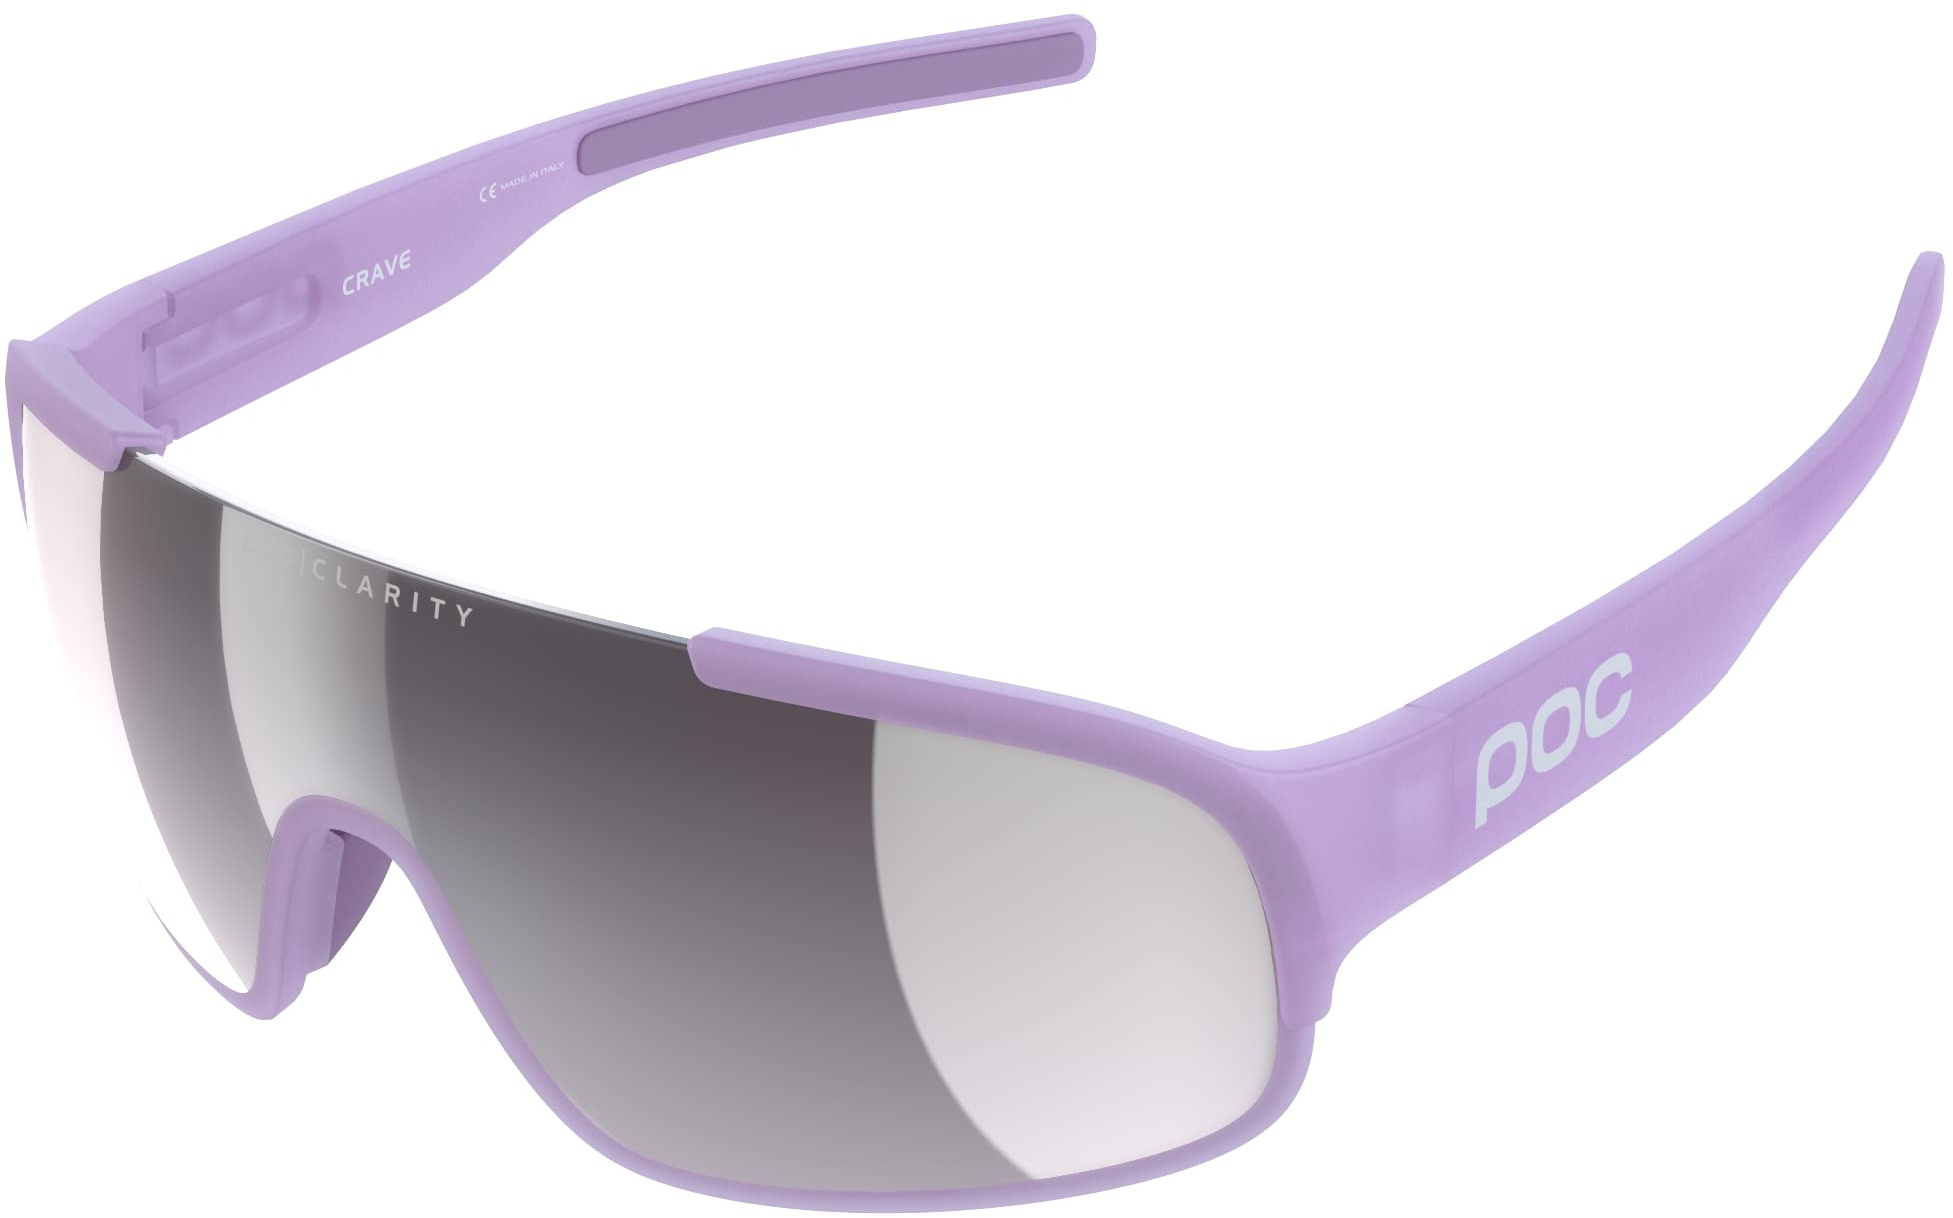 POC Crave Sonnenbrille - Sportbrille mit einem leichten, flexiblen und strapazierfähigen Grilamid-Rahmen ideal für jede sportliche Herausforderung